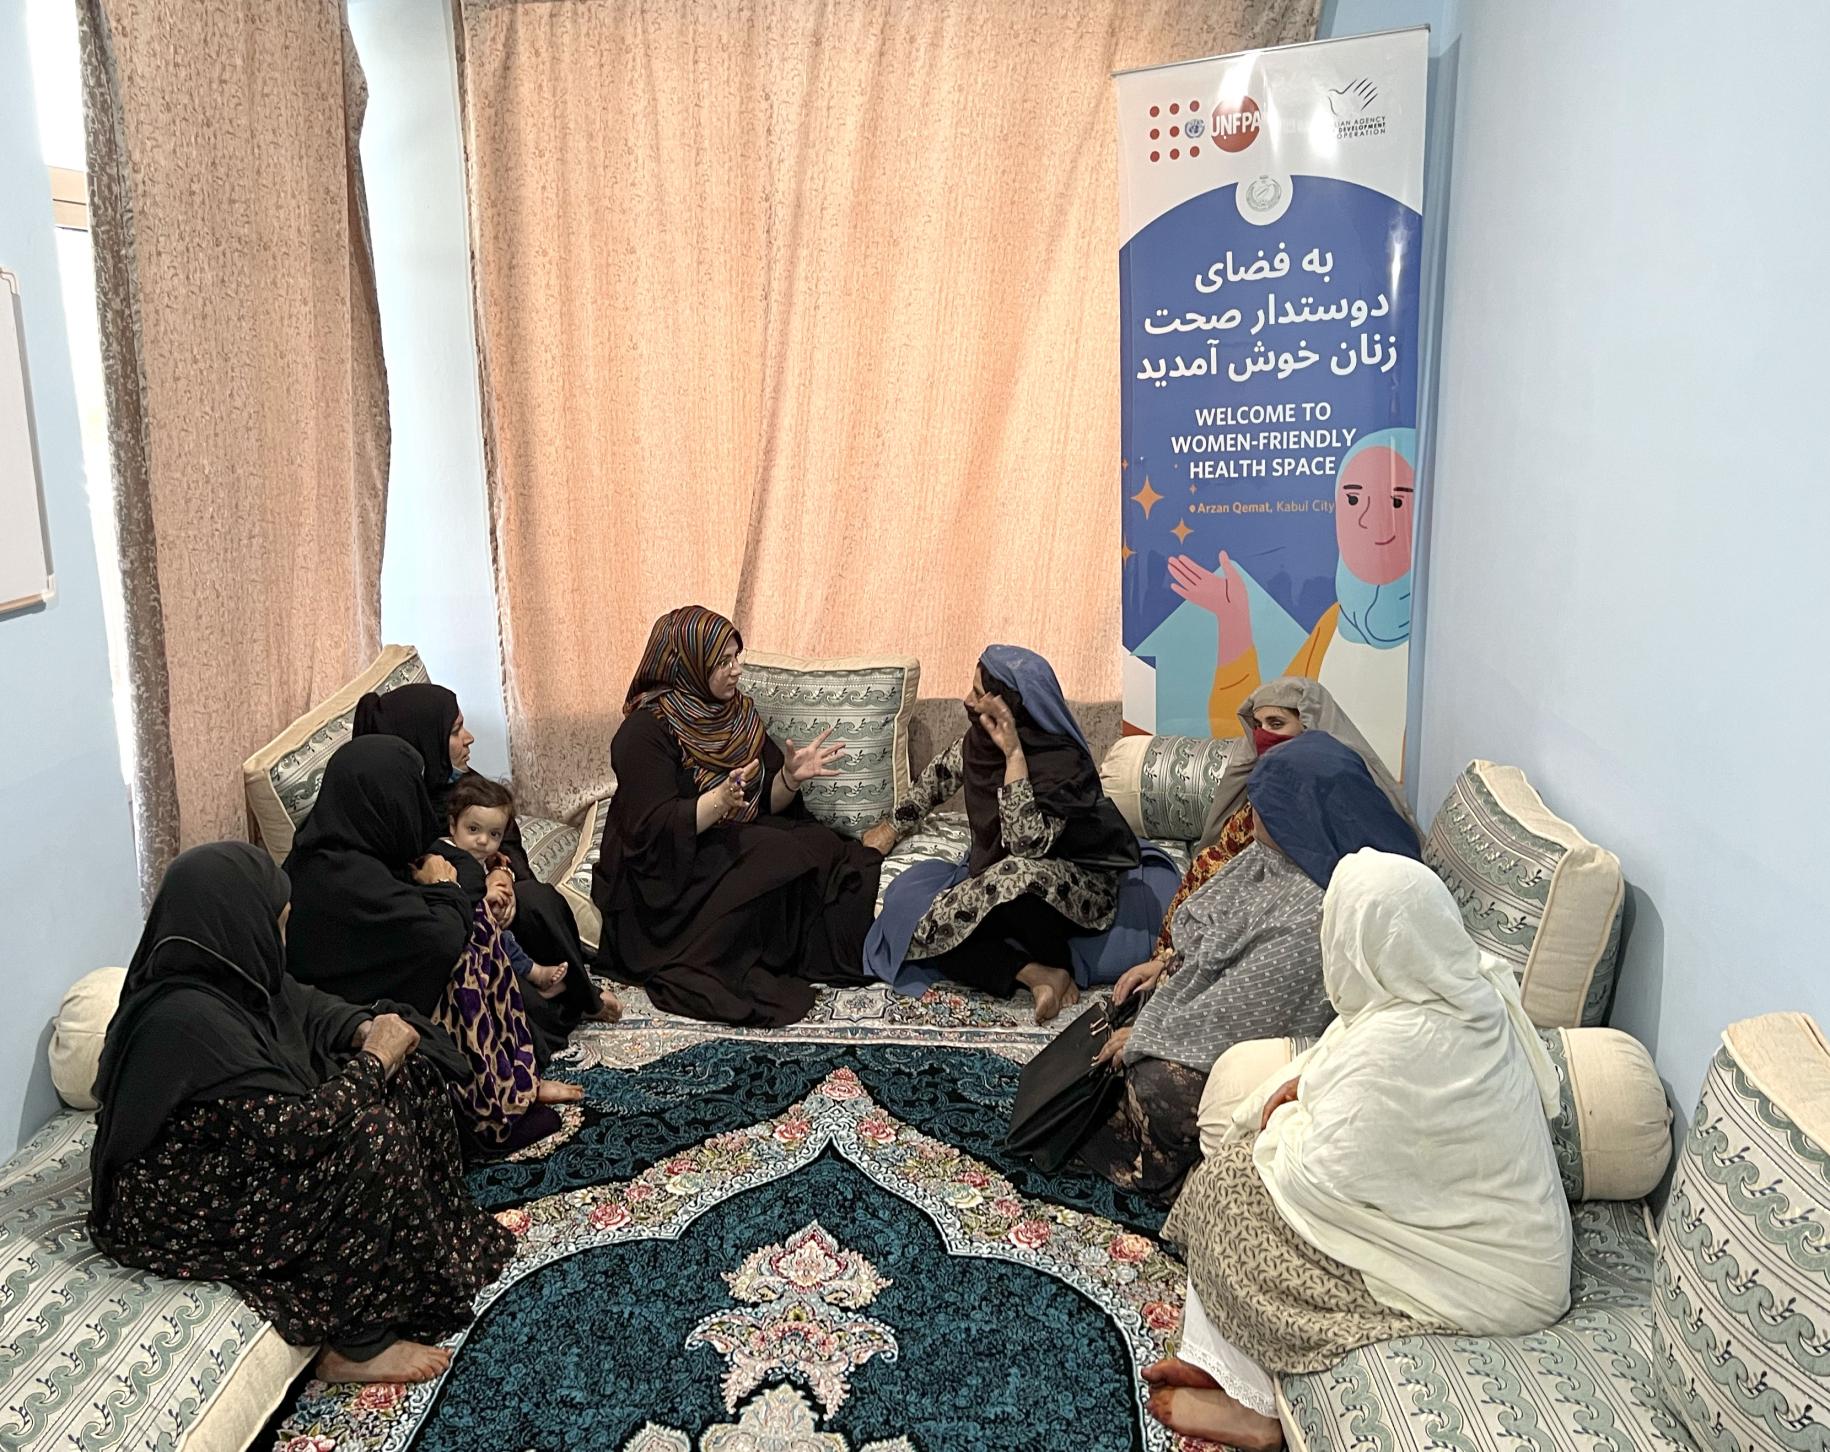 En Afghanistan, un groupe de femmes intégralement voilées sont assises en cercle sur des matelas, à même le sol, dans une pièce fermée, et discutent entre elles. En arrière-plan a été installée la bannière du programme " Welcome to women-friendly health space", qui signifie en français "Bienvenue dans l'espace de santé adapté aux femmes".